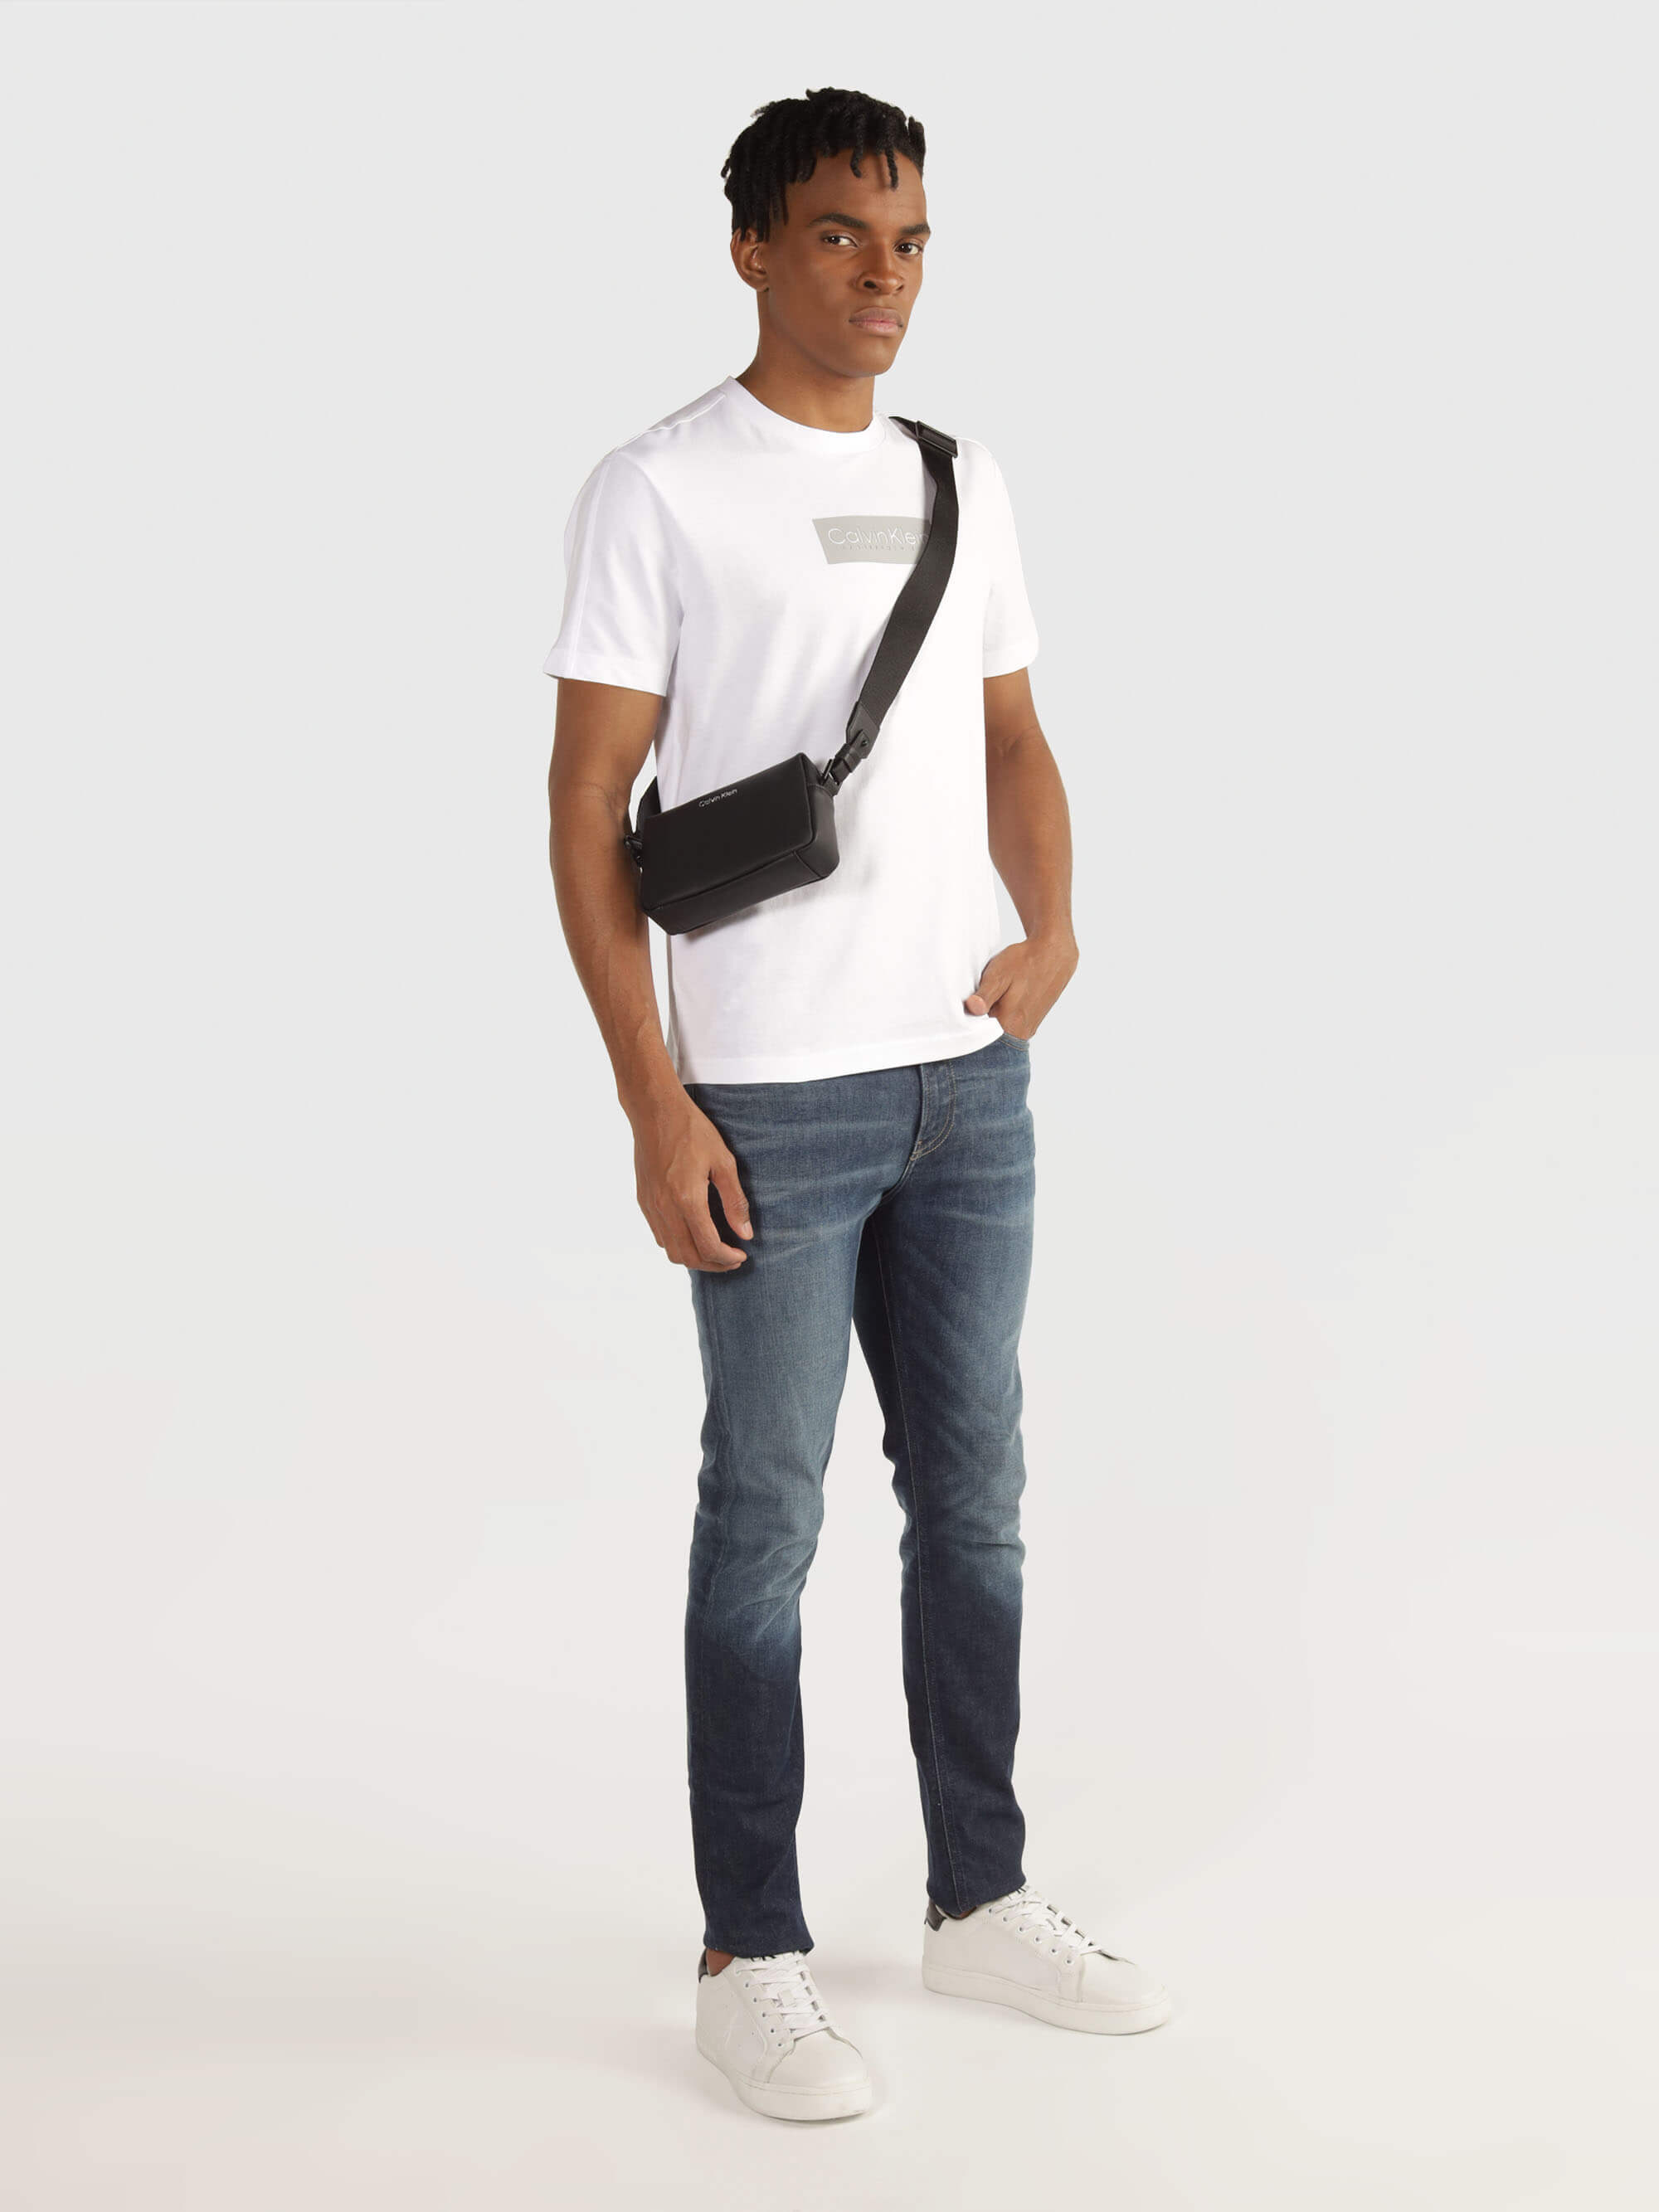 Bolsa Calvin Klein Camera Hombre Negro - Talla: Única